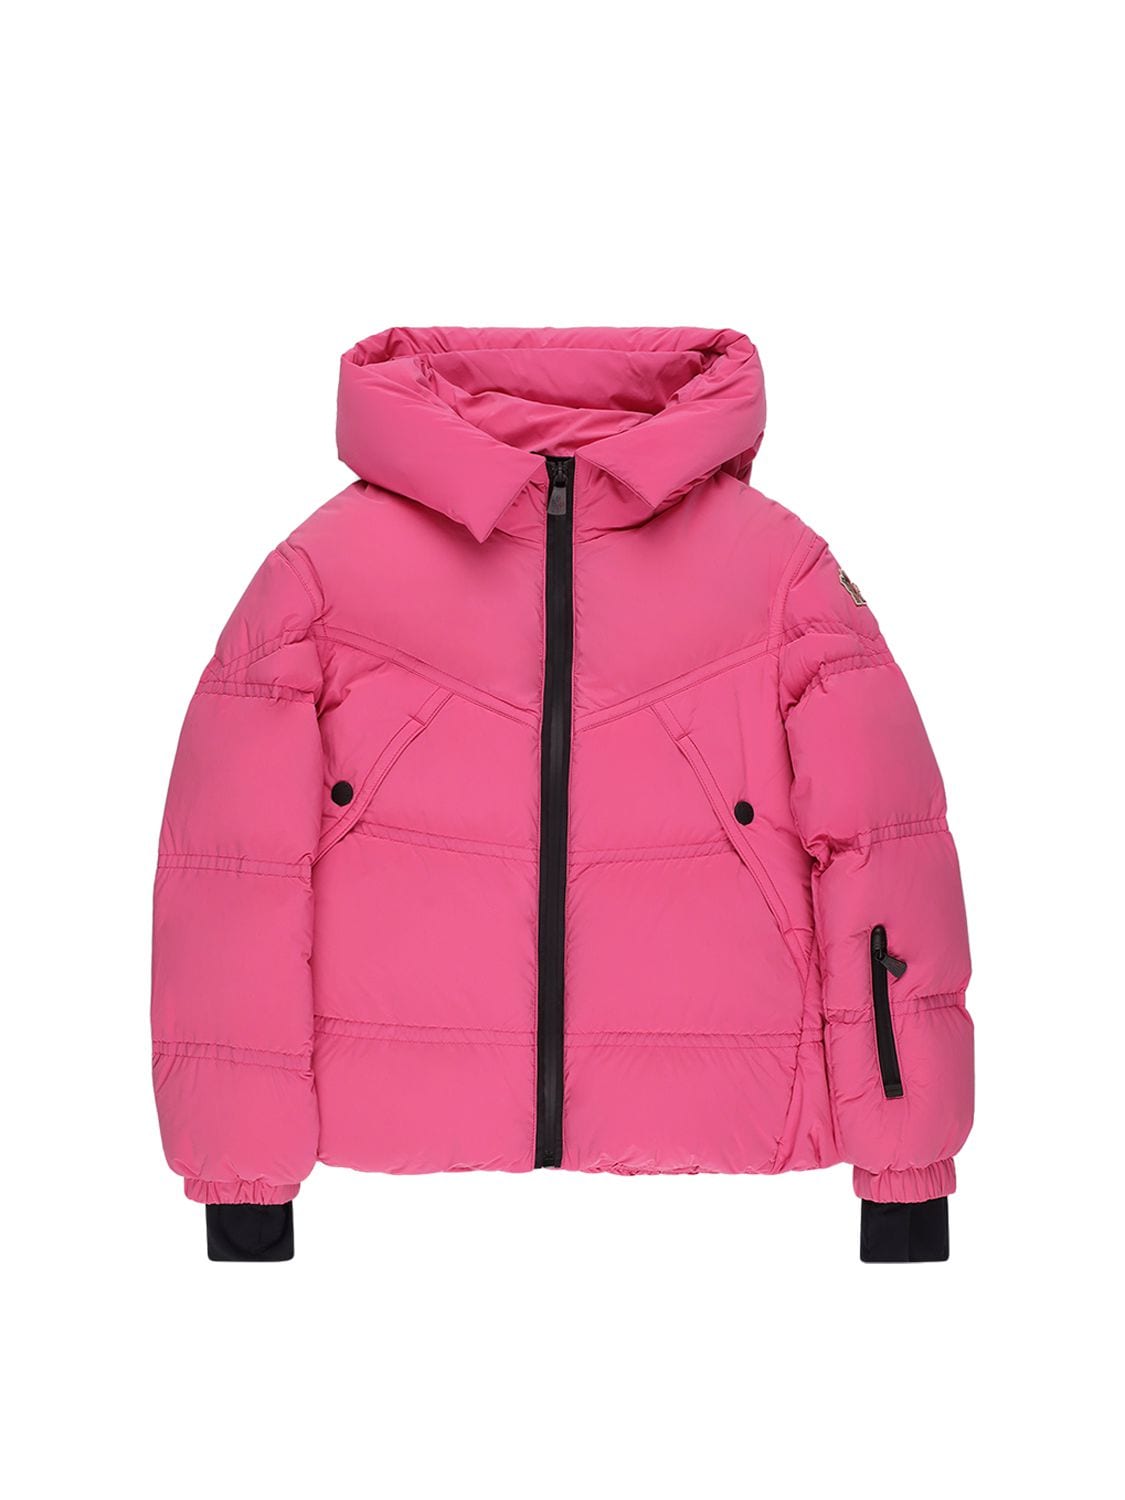 Moncler Grenoble Kids' Vernayaz Nylon Down Ski Jacket In Pink